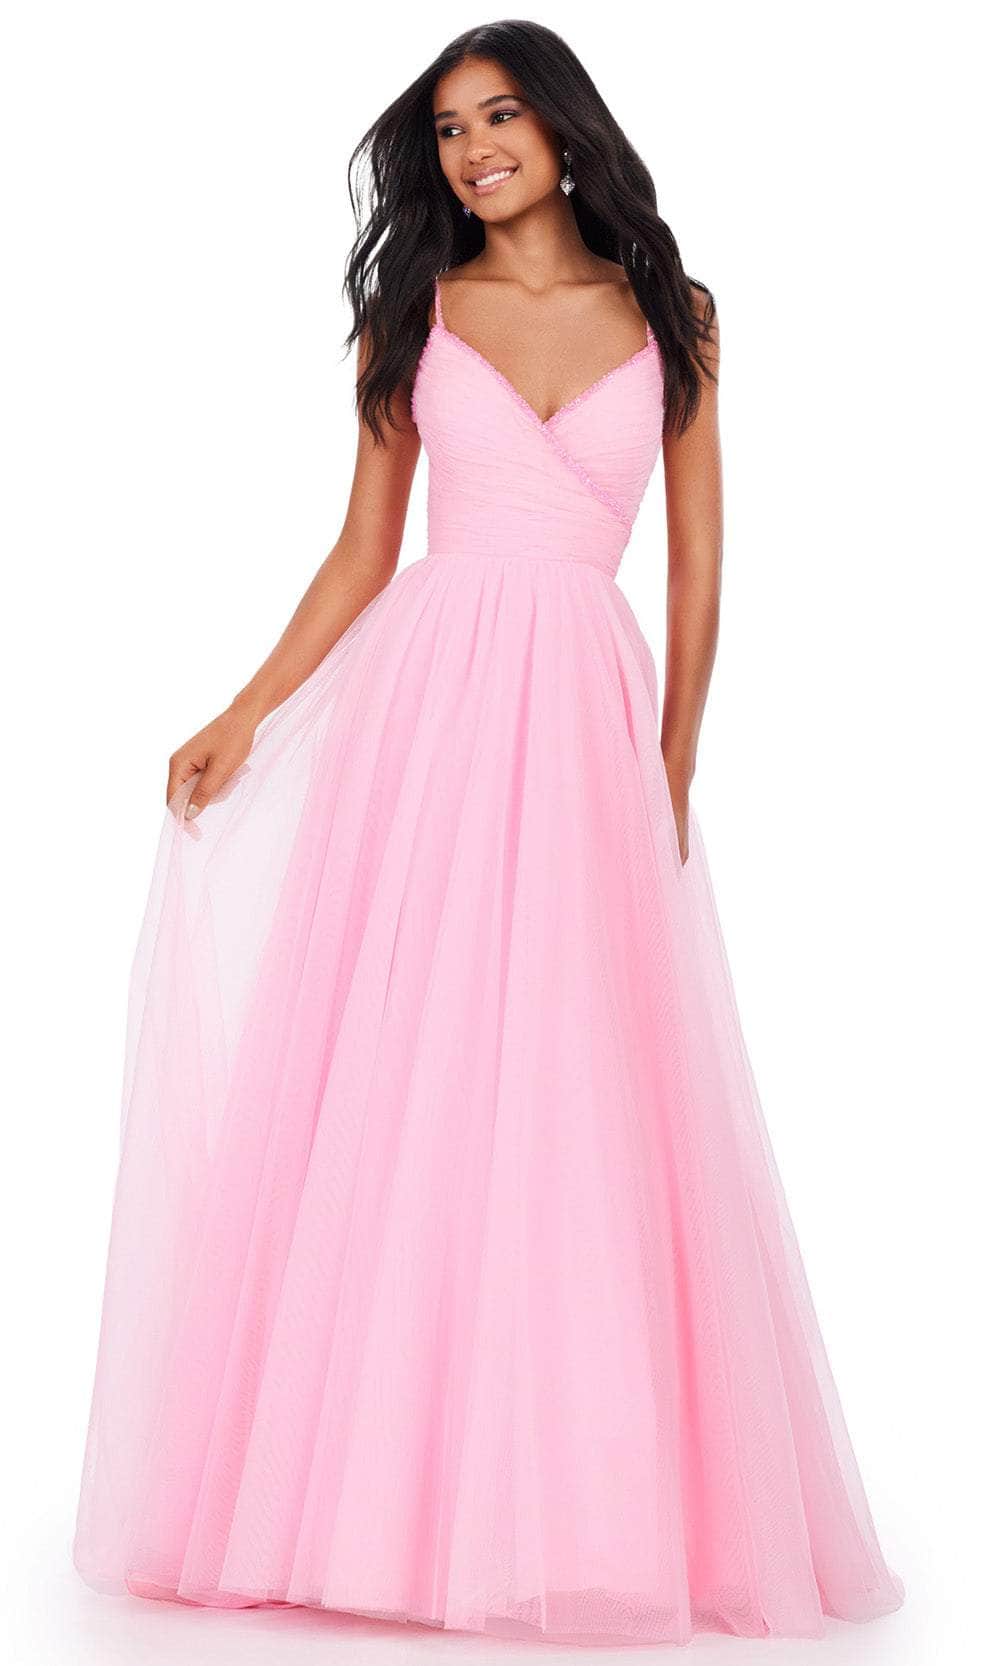 Image of Ashley Lauren 11461 - Shirred Bodice Prom Dress